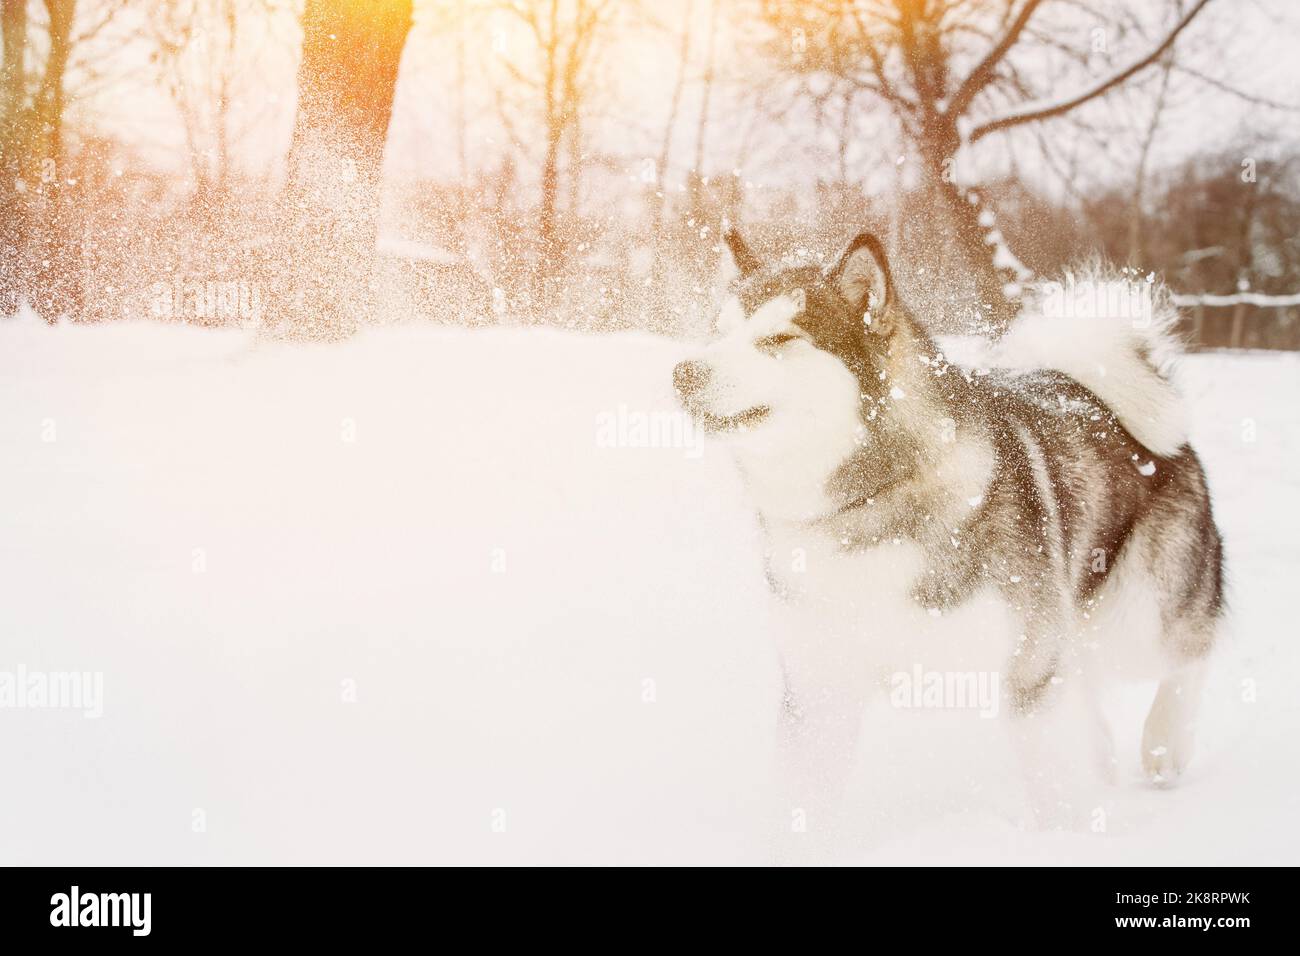 Junger Sibirischer Husky-Hund Mit Schnee Bestreut. Hund Läuft Spielerisch Durch Die Schneeverwehungen Outdoor Im Winter Snowy Forest. Haustiere Spielen, Springen Und Schnell Stockfoto